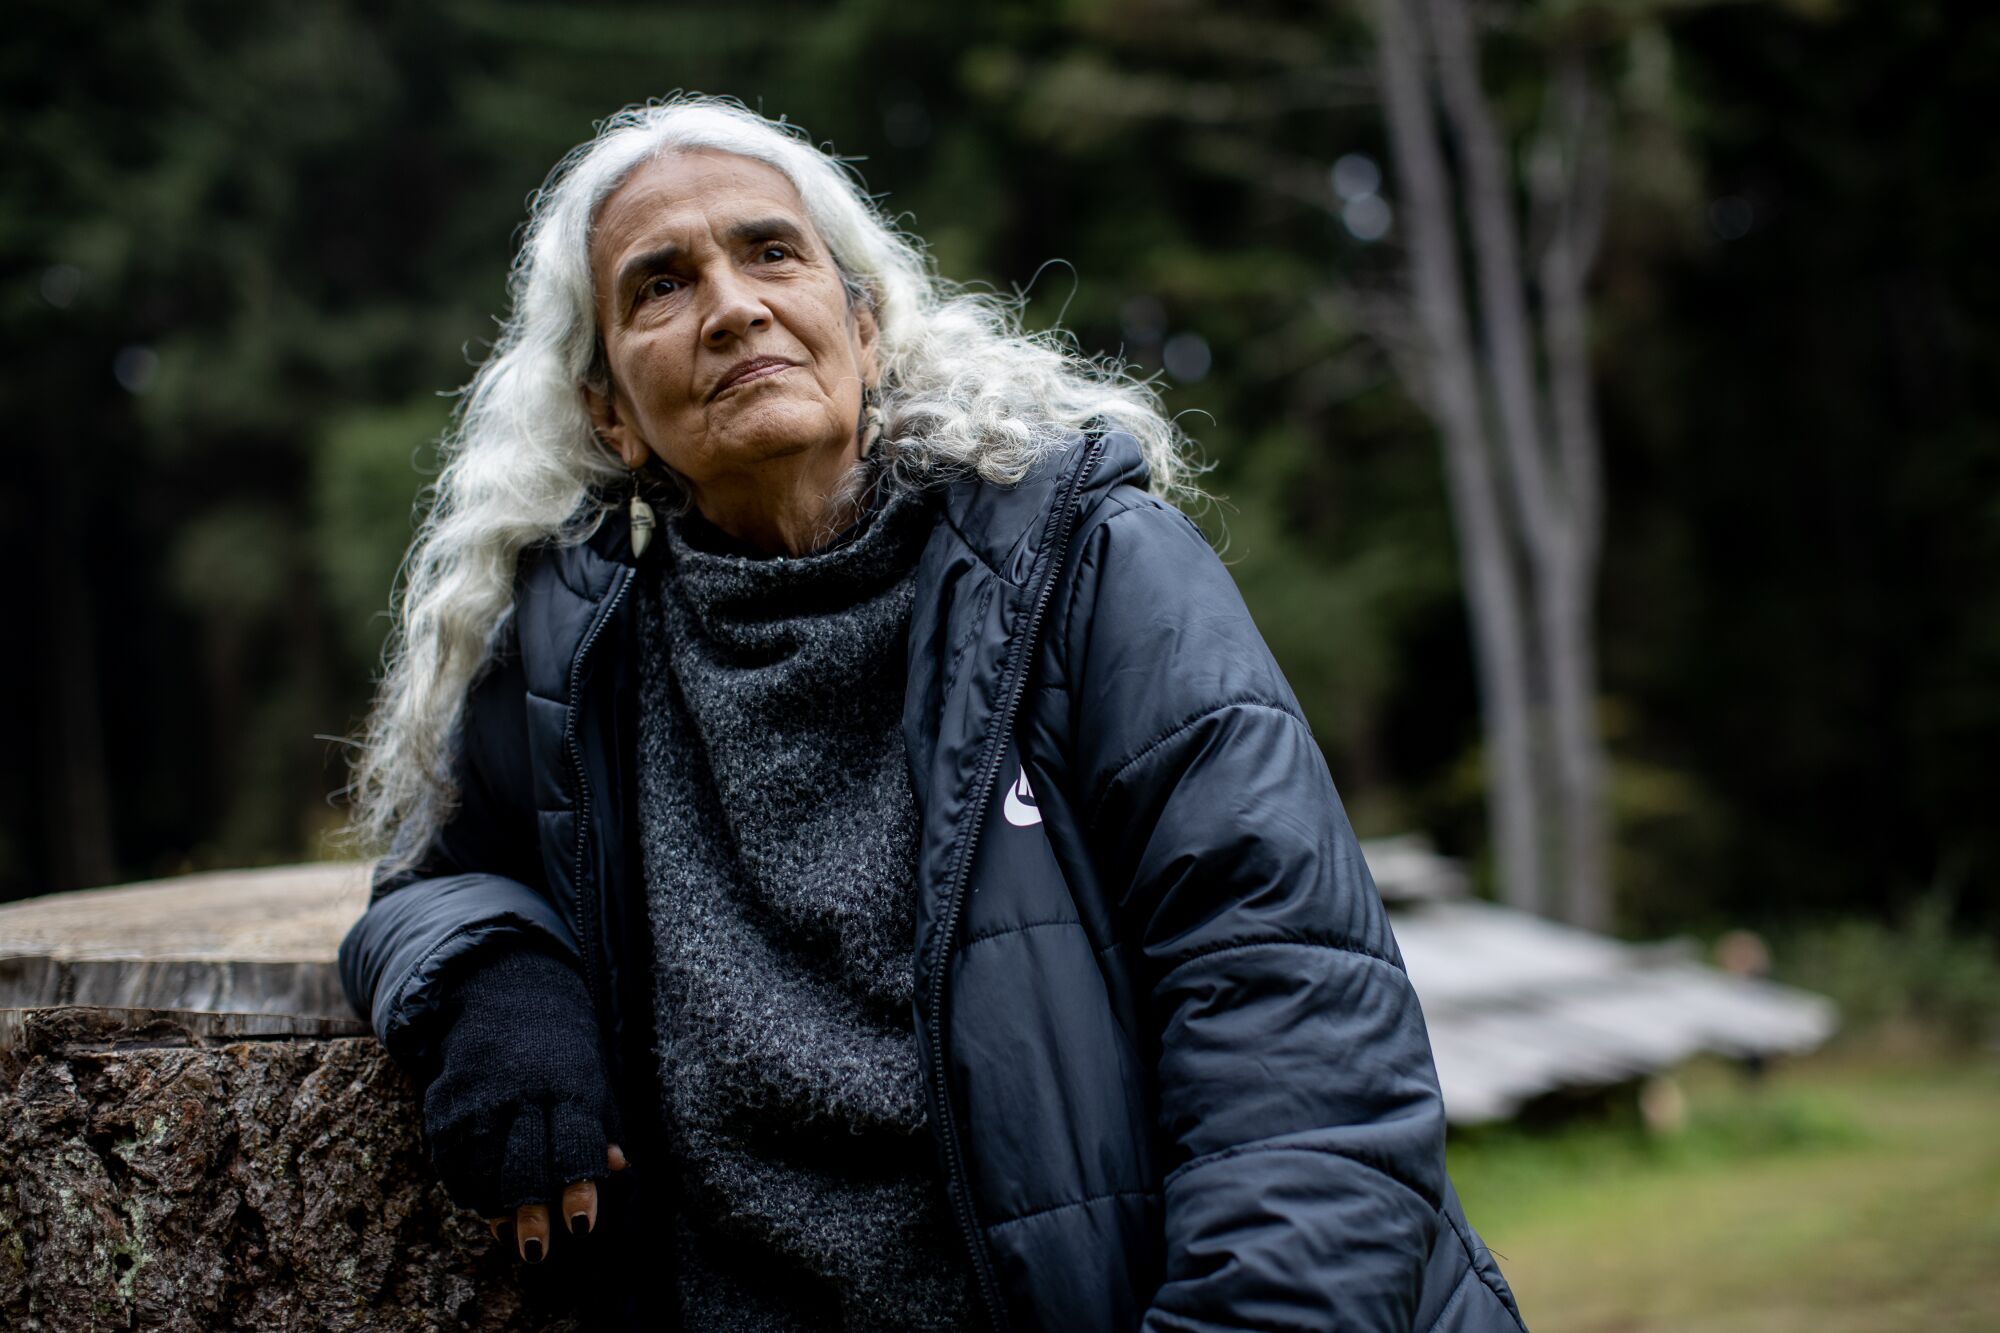 Yurok Chief Judge Abby Abinanti leans against a tree stump